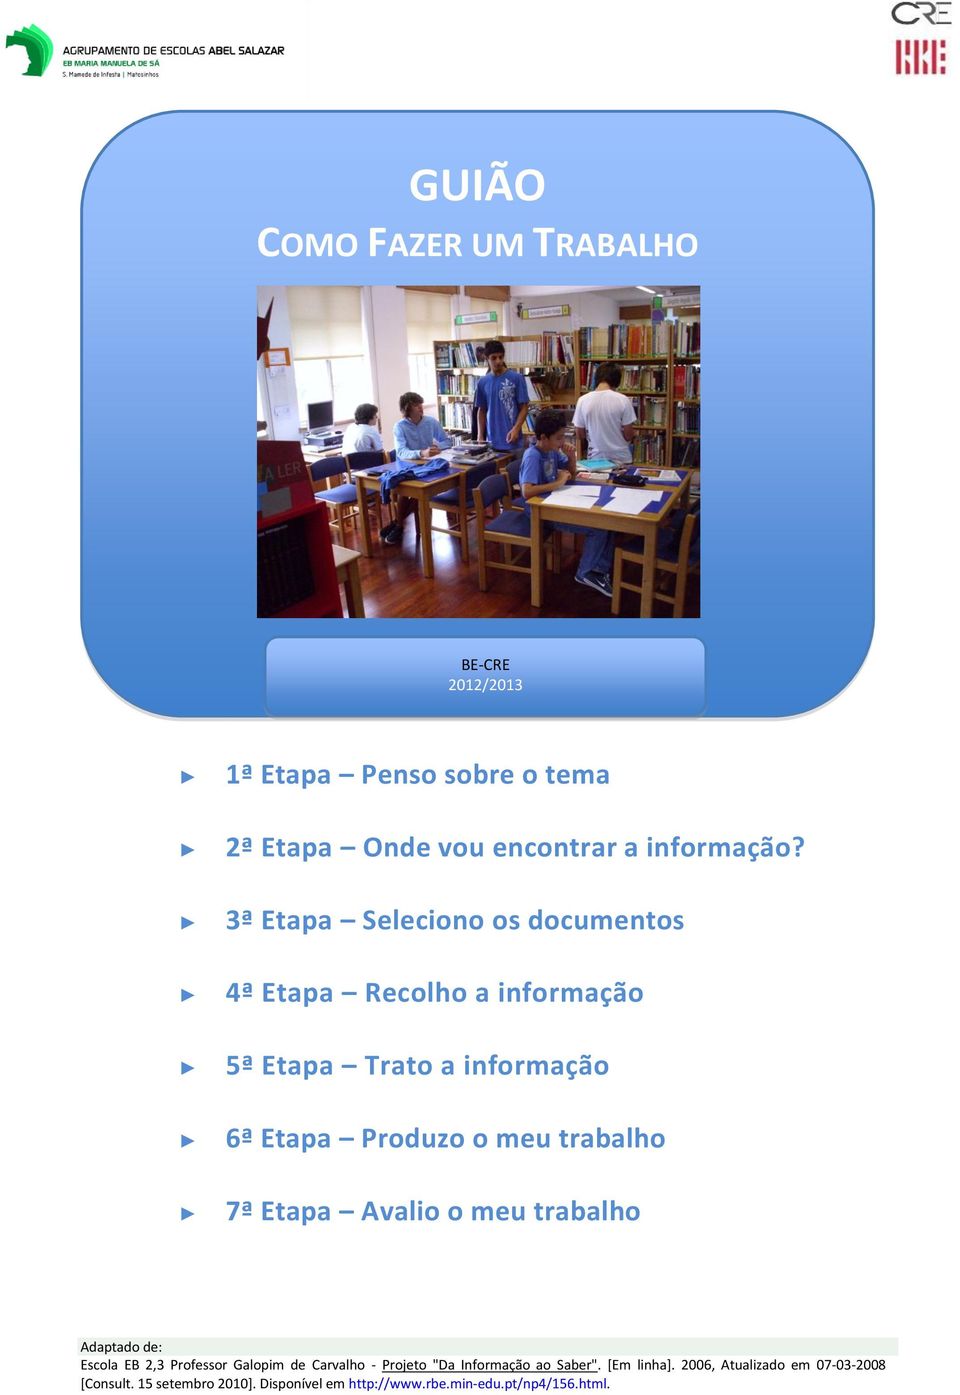 trabalho 7ª Etapa Avalio o meu trabalho Adaptado de: Escola EB 2,3 Professor Galopim de Carvalho - Projeto "Da Informação